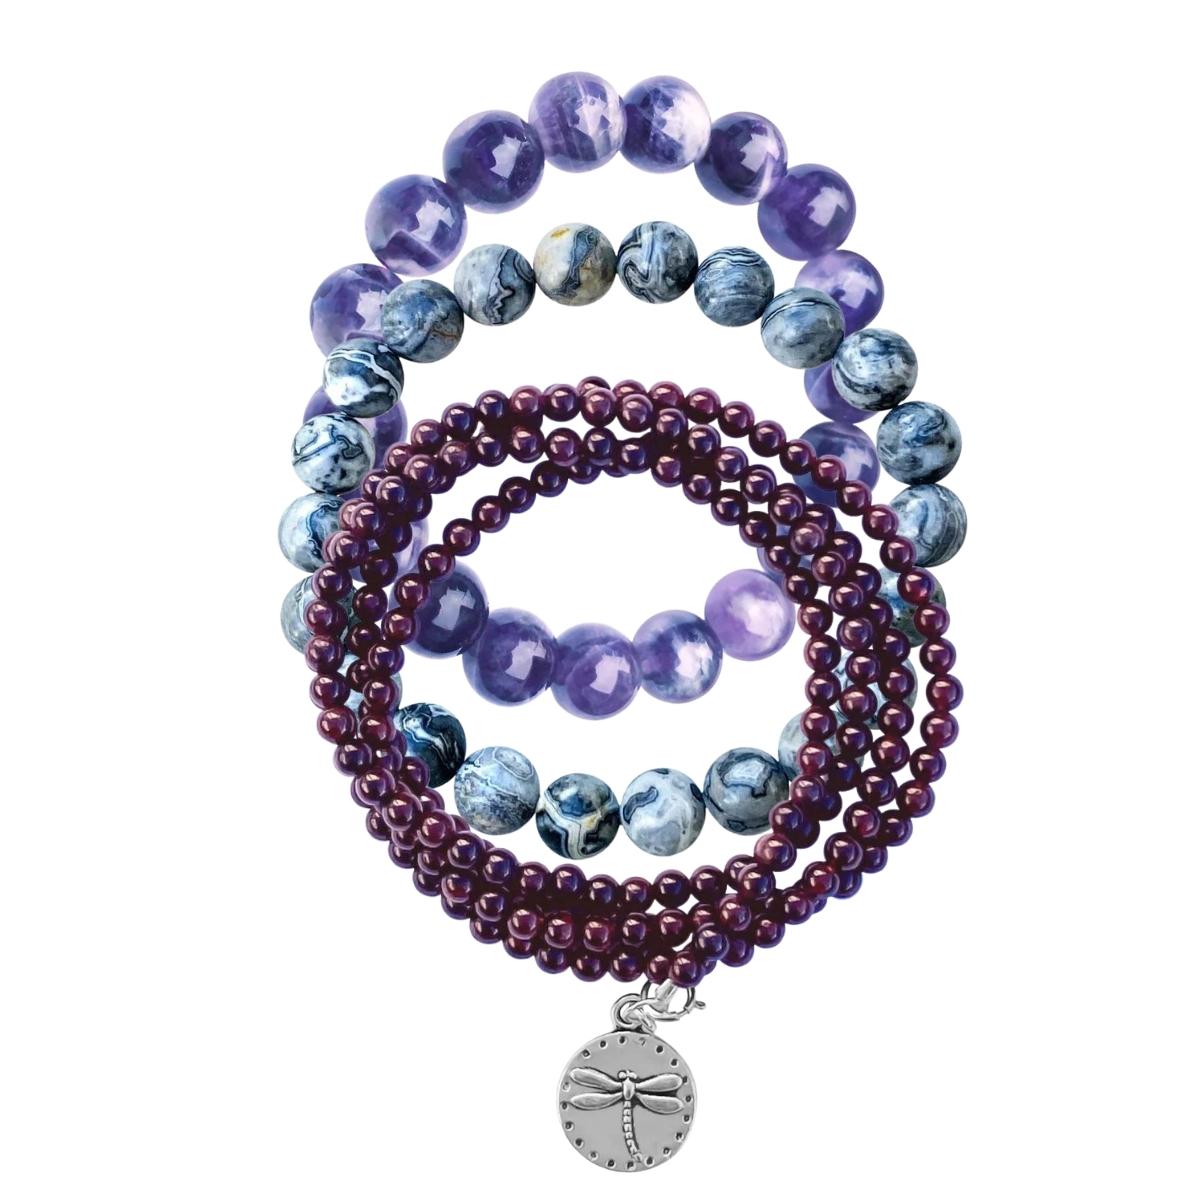 Aquarius Zodiac bracelet – Cold Lava Studio